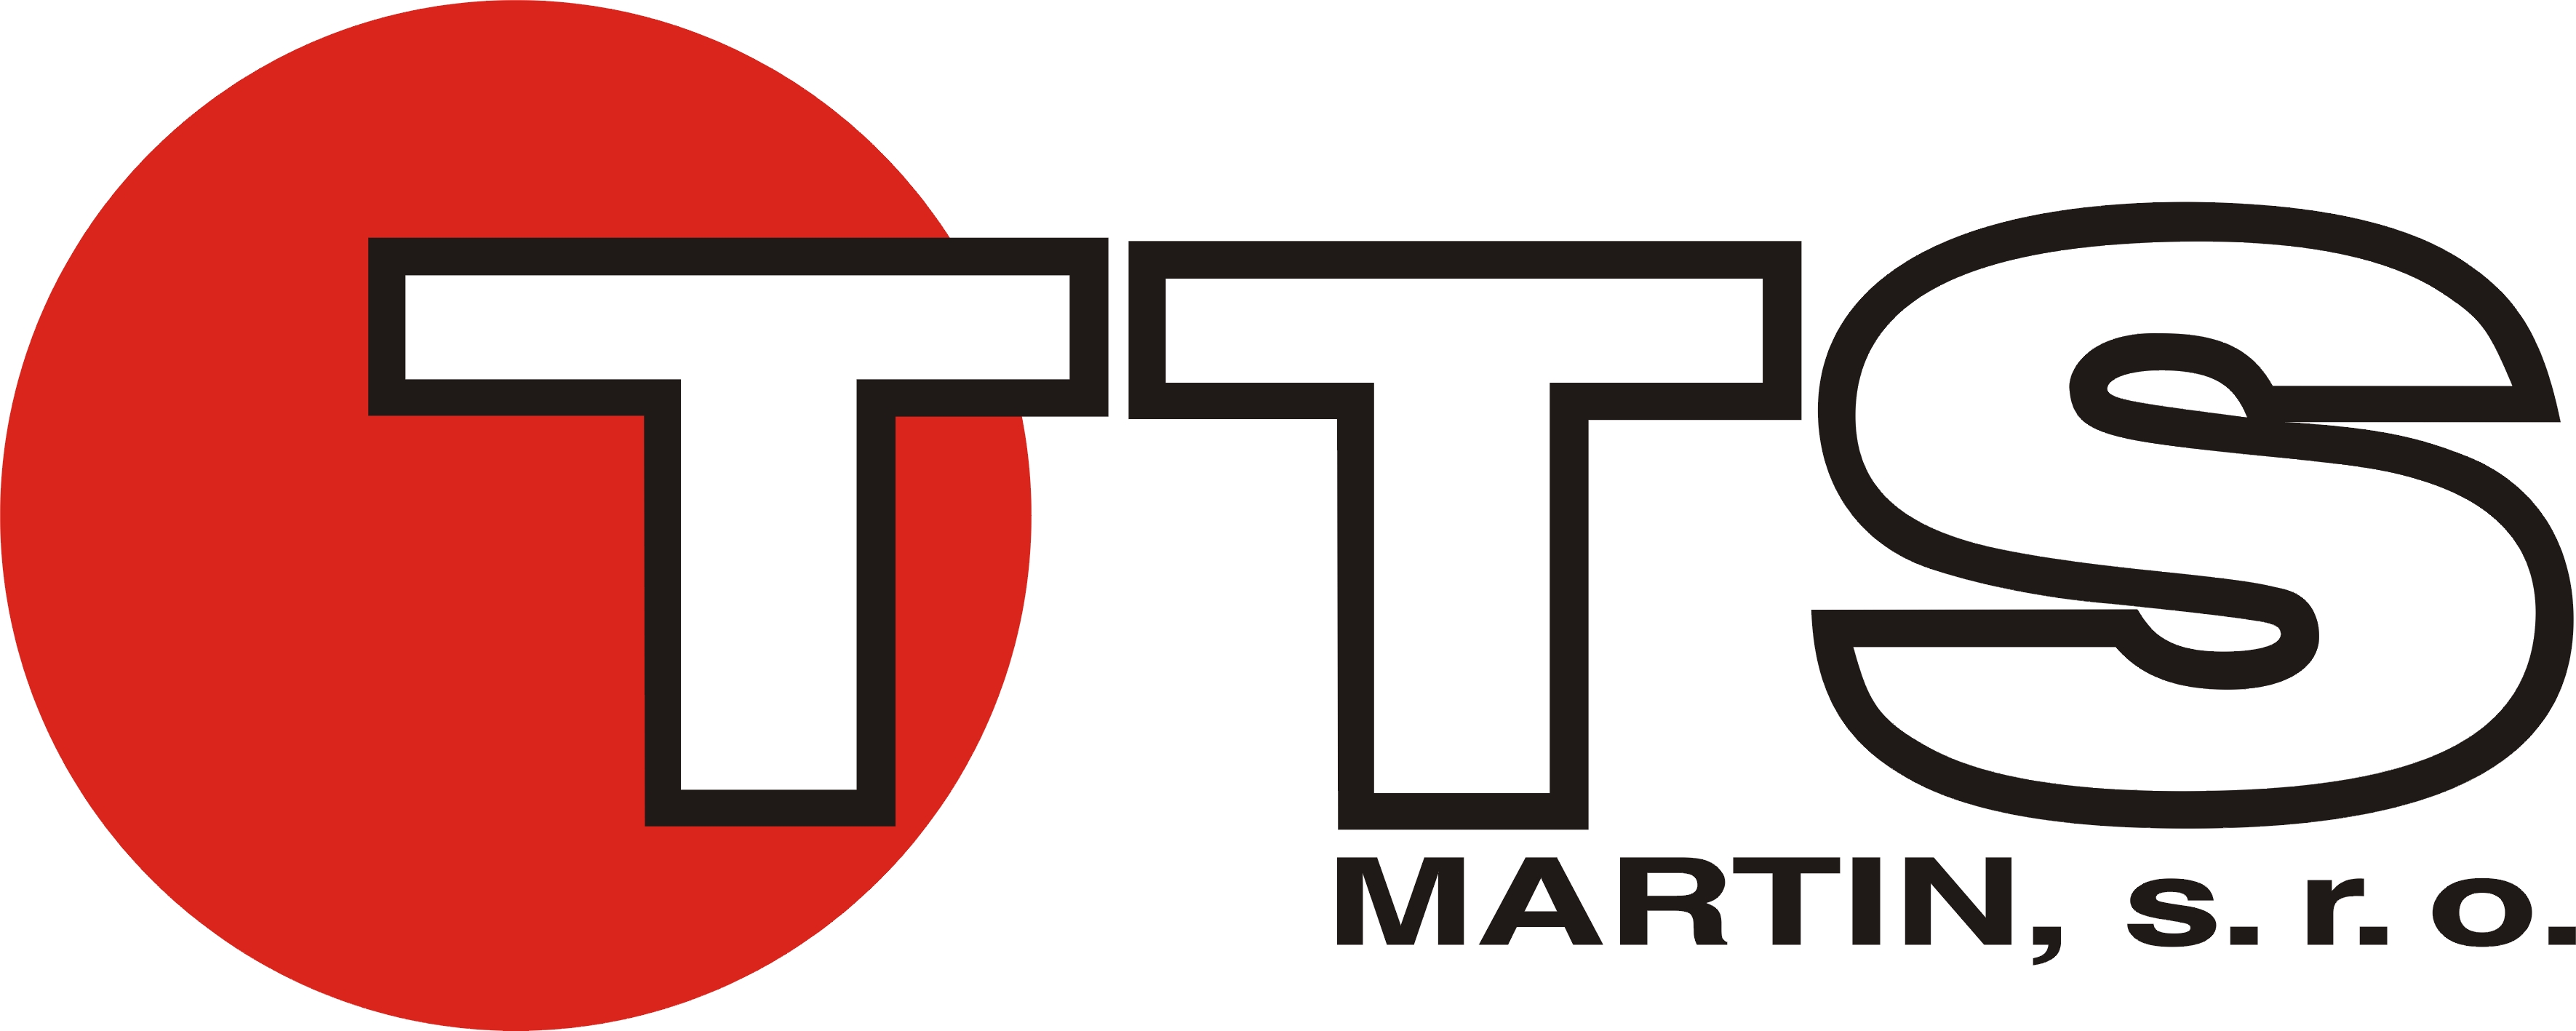 TTS Martin, s.r.o